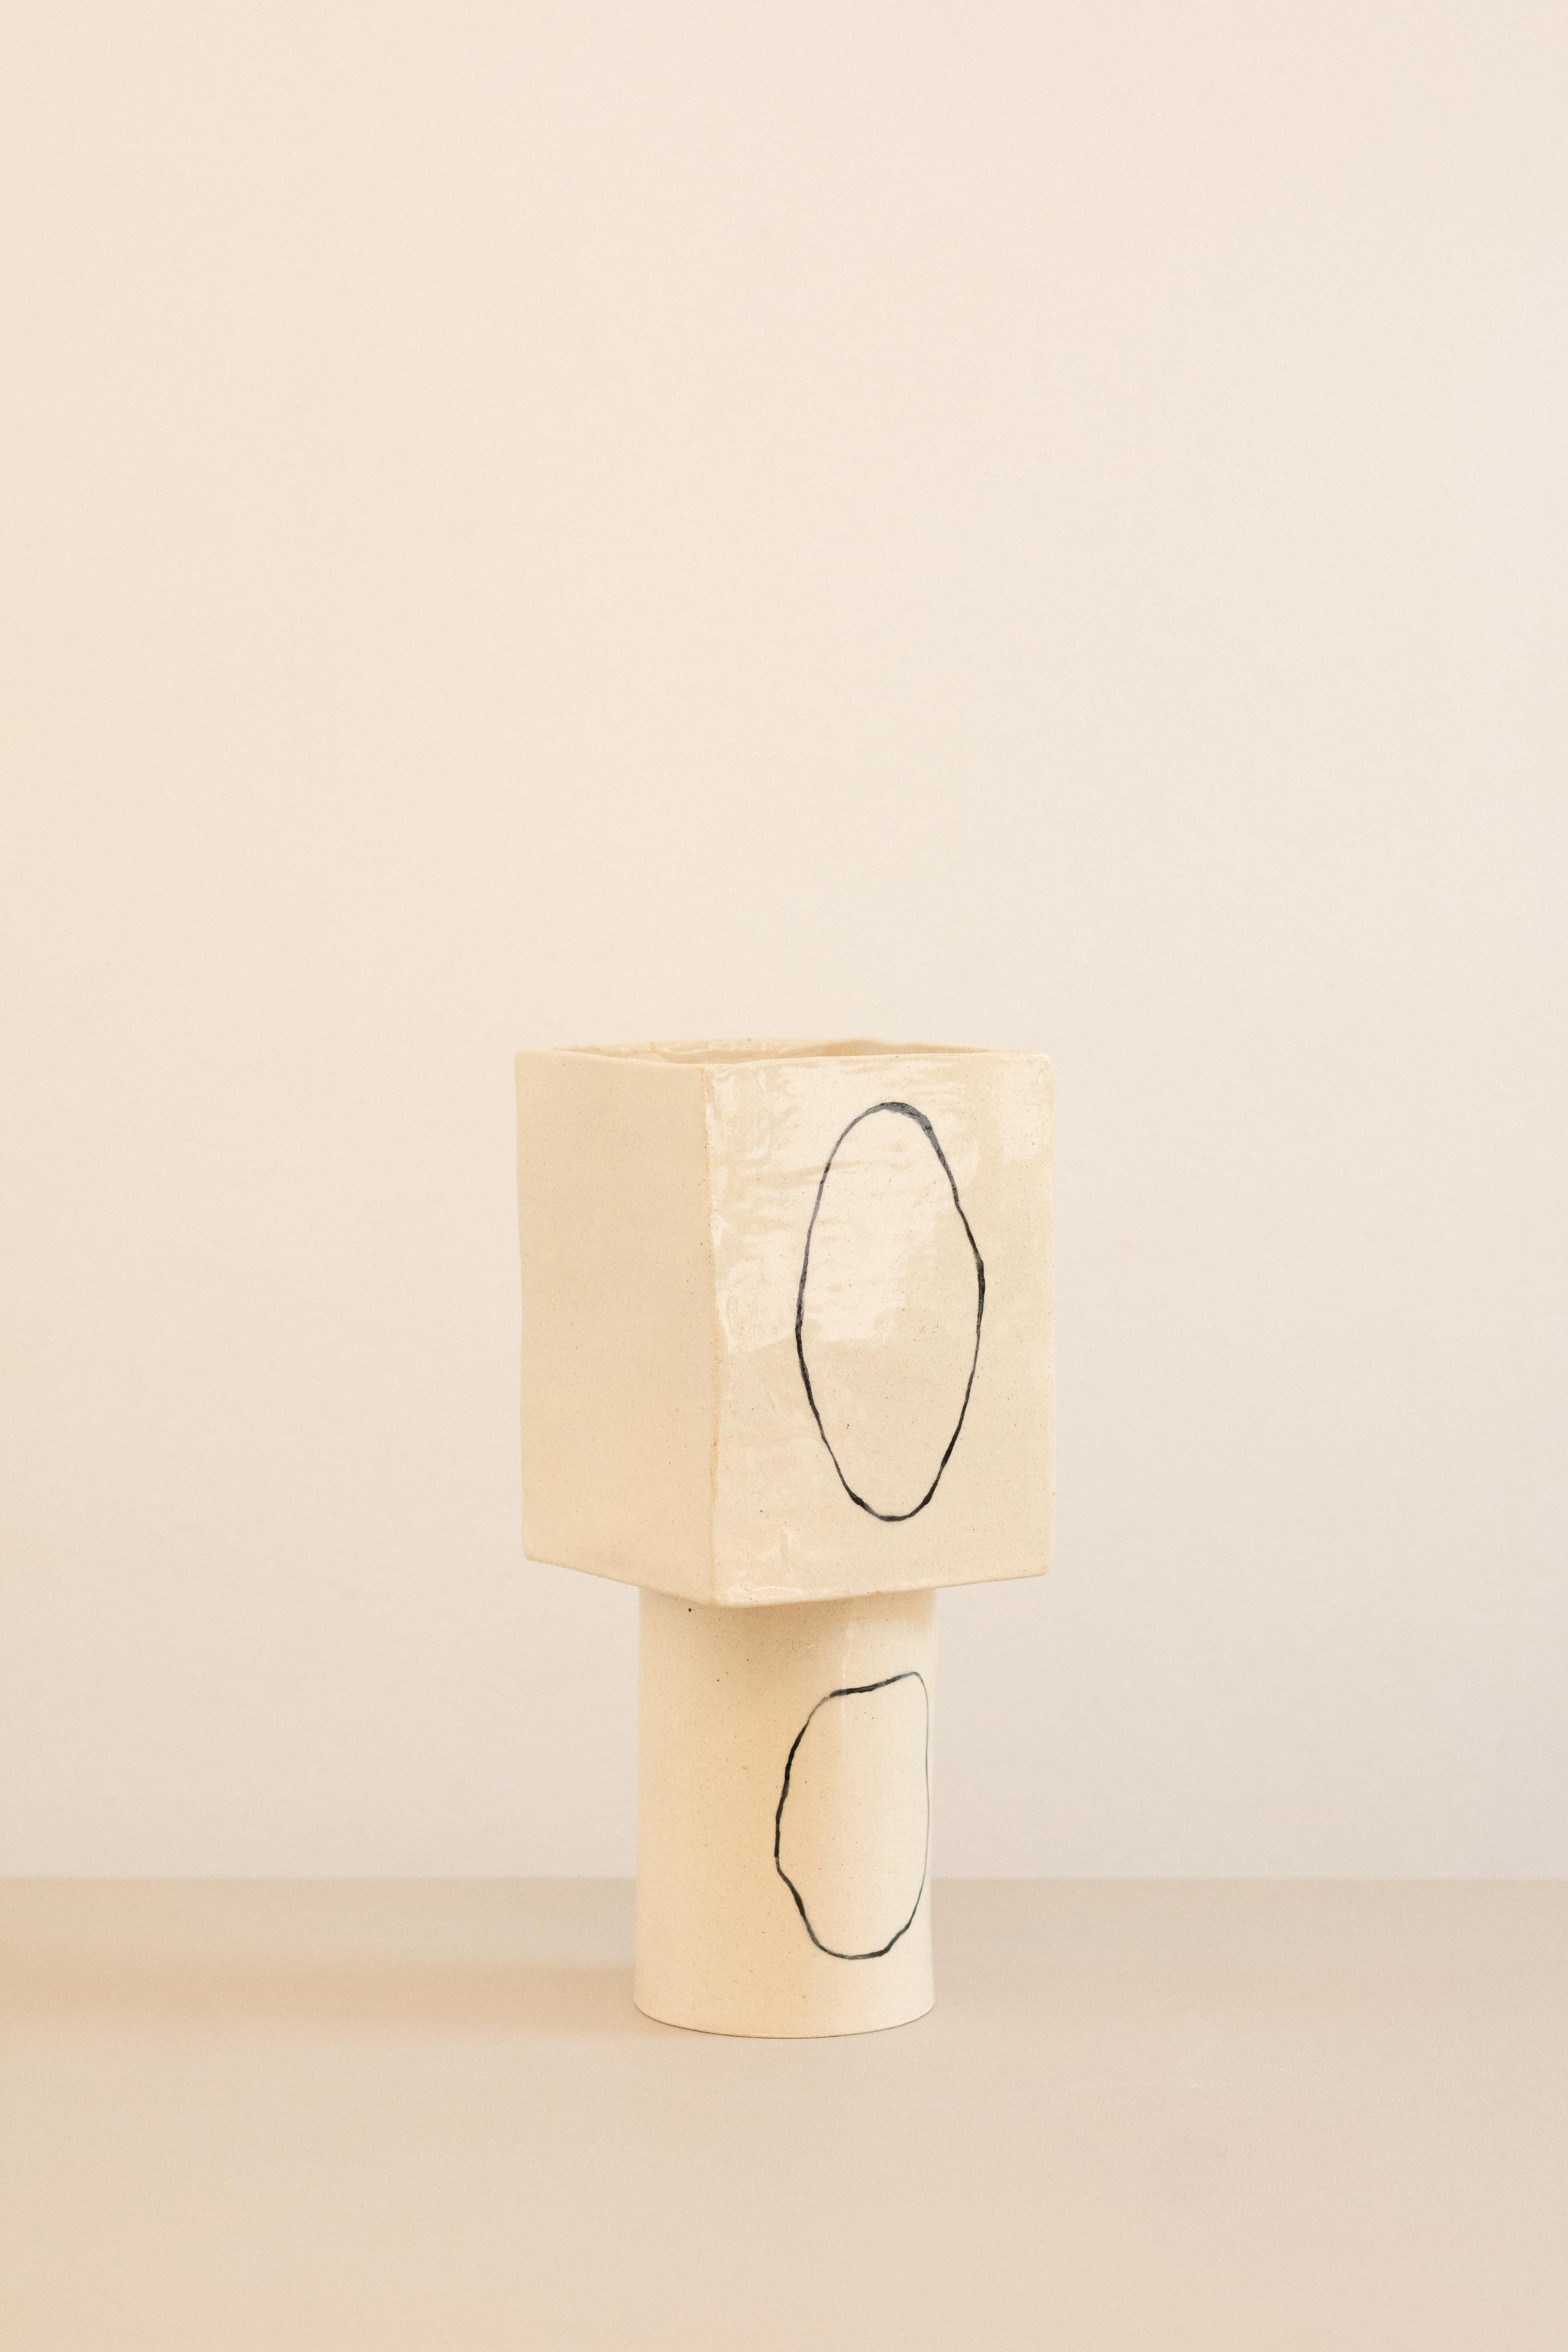 Clay contemporary white ceramic vase inspired in Miró - ZERO serie - obj01, brazil  For Sale